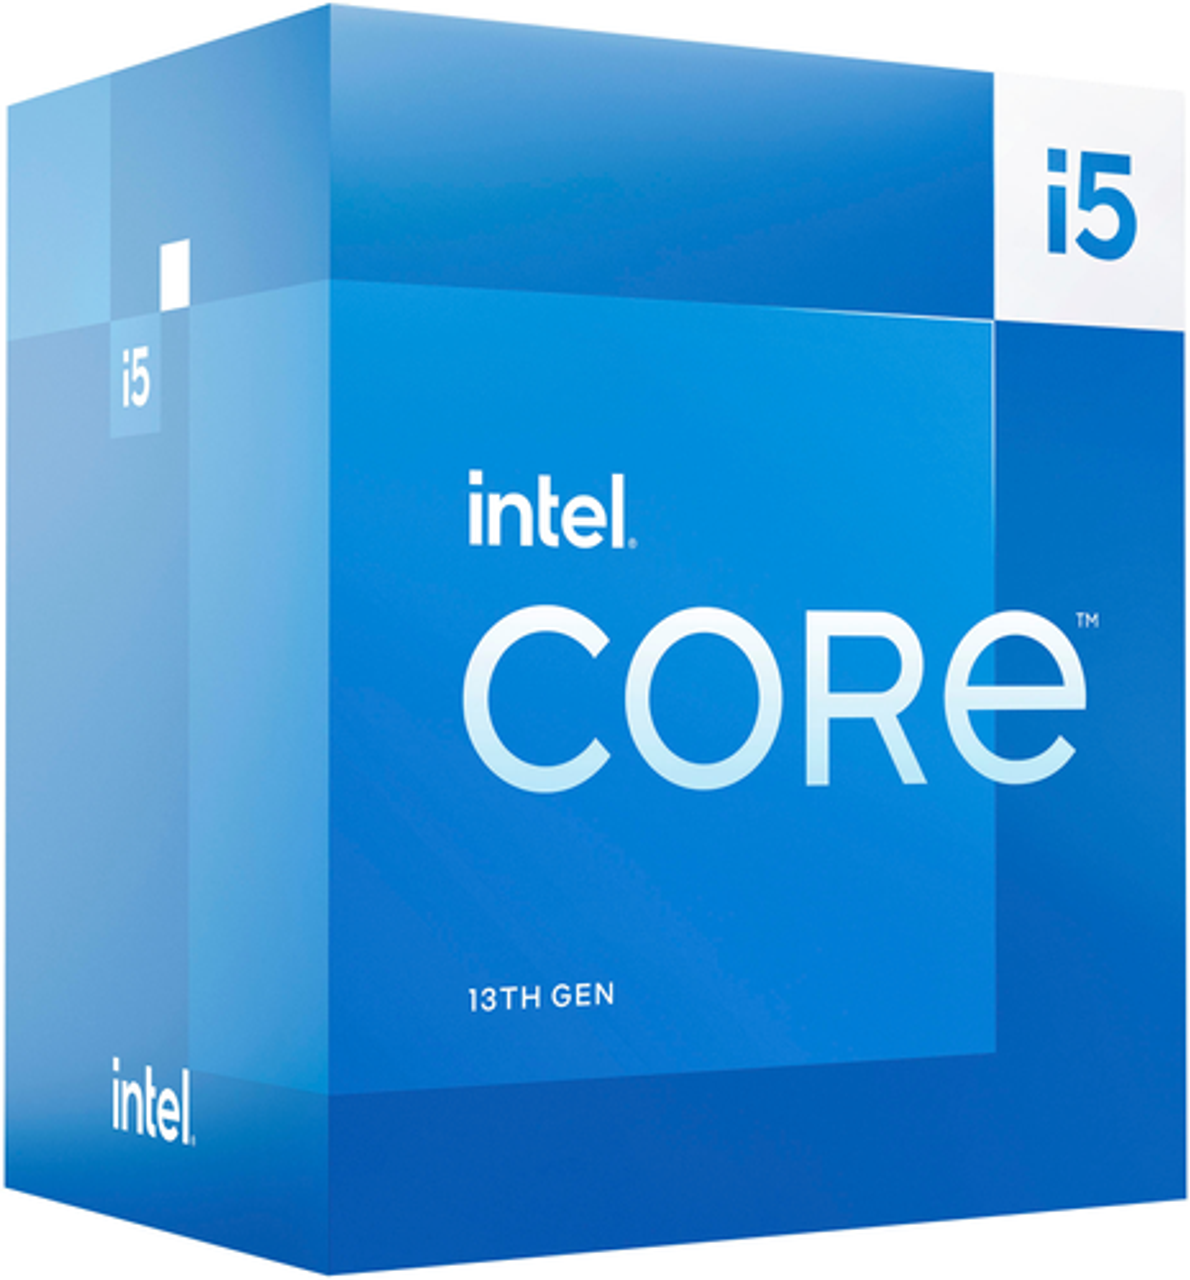 Intel - Core i5-13500 13th Gen 14 cores 6 P-cores + 8 E-cores, 24MB Cache, 2.5 to 4.8 GHz Desktop Processor